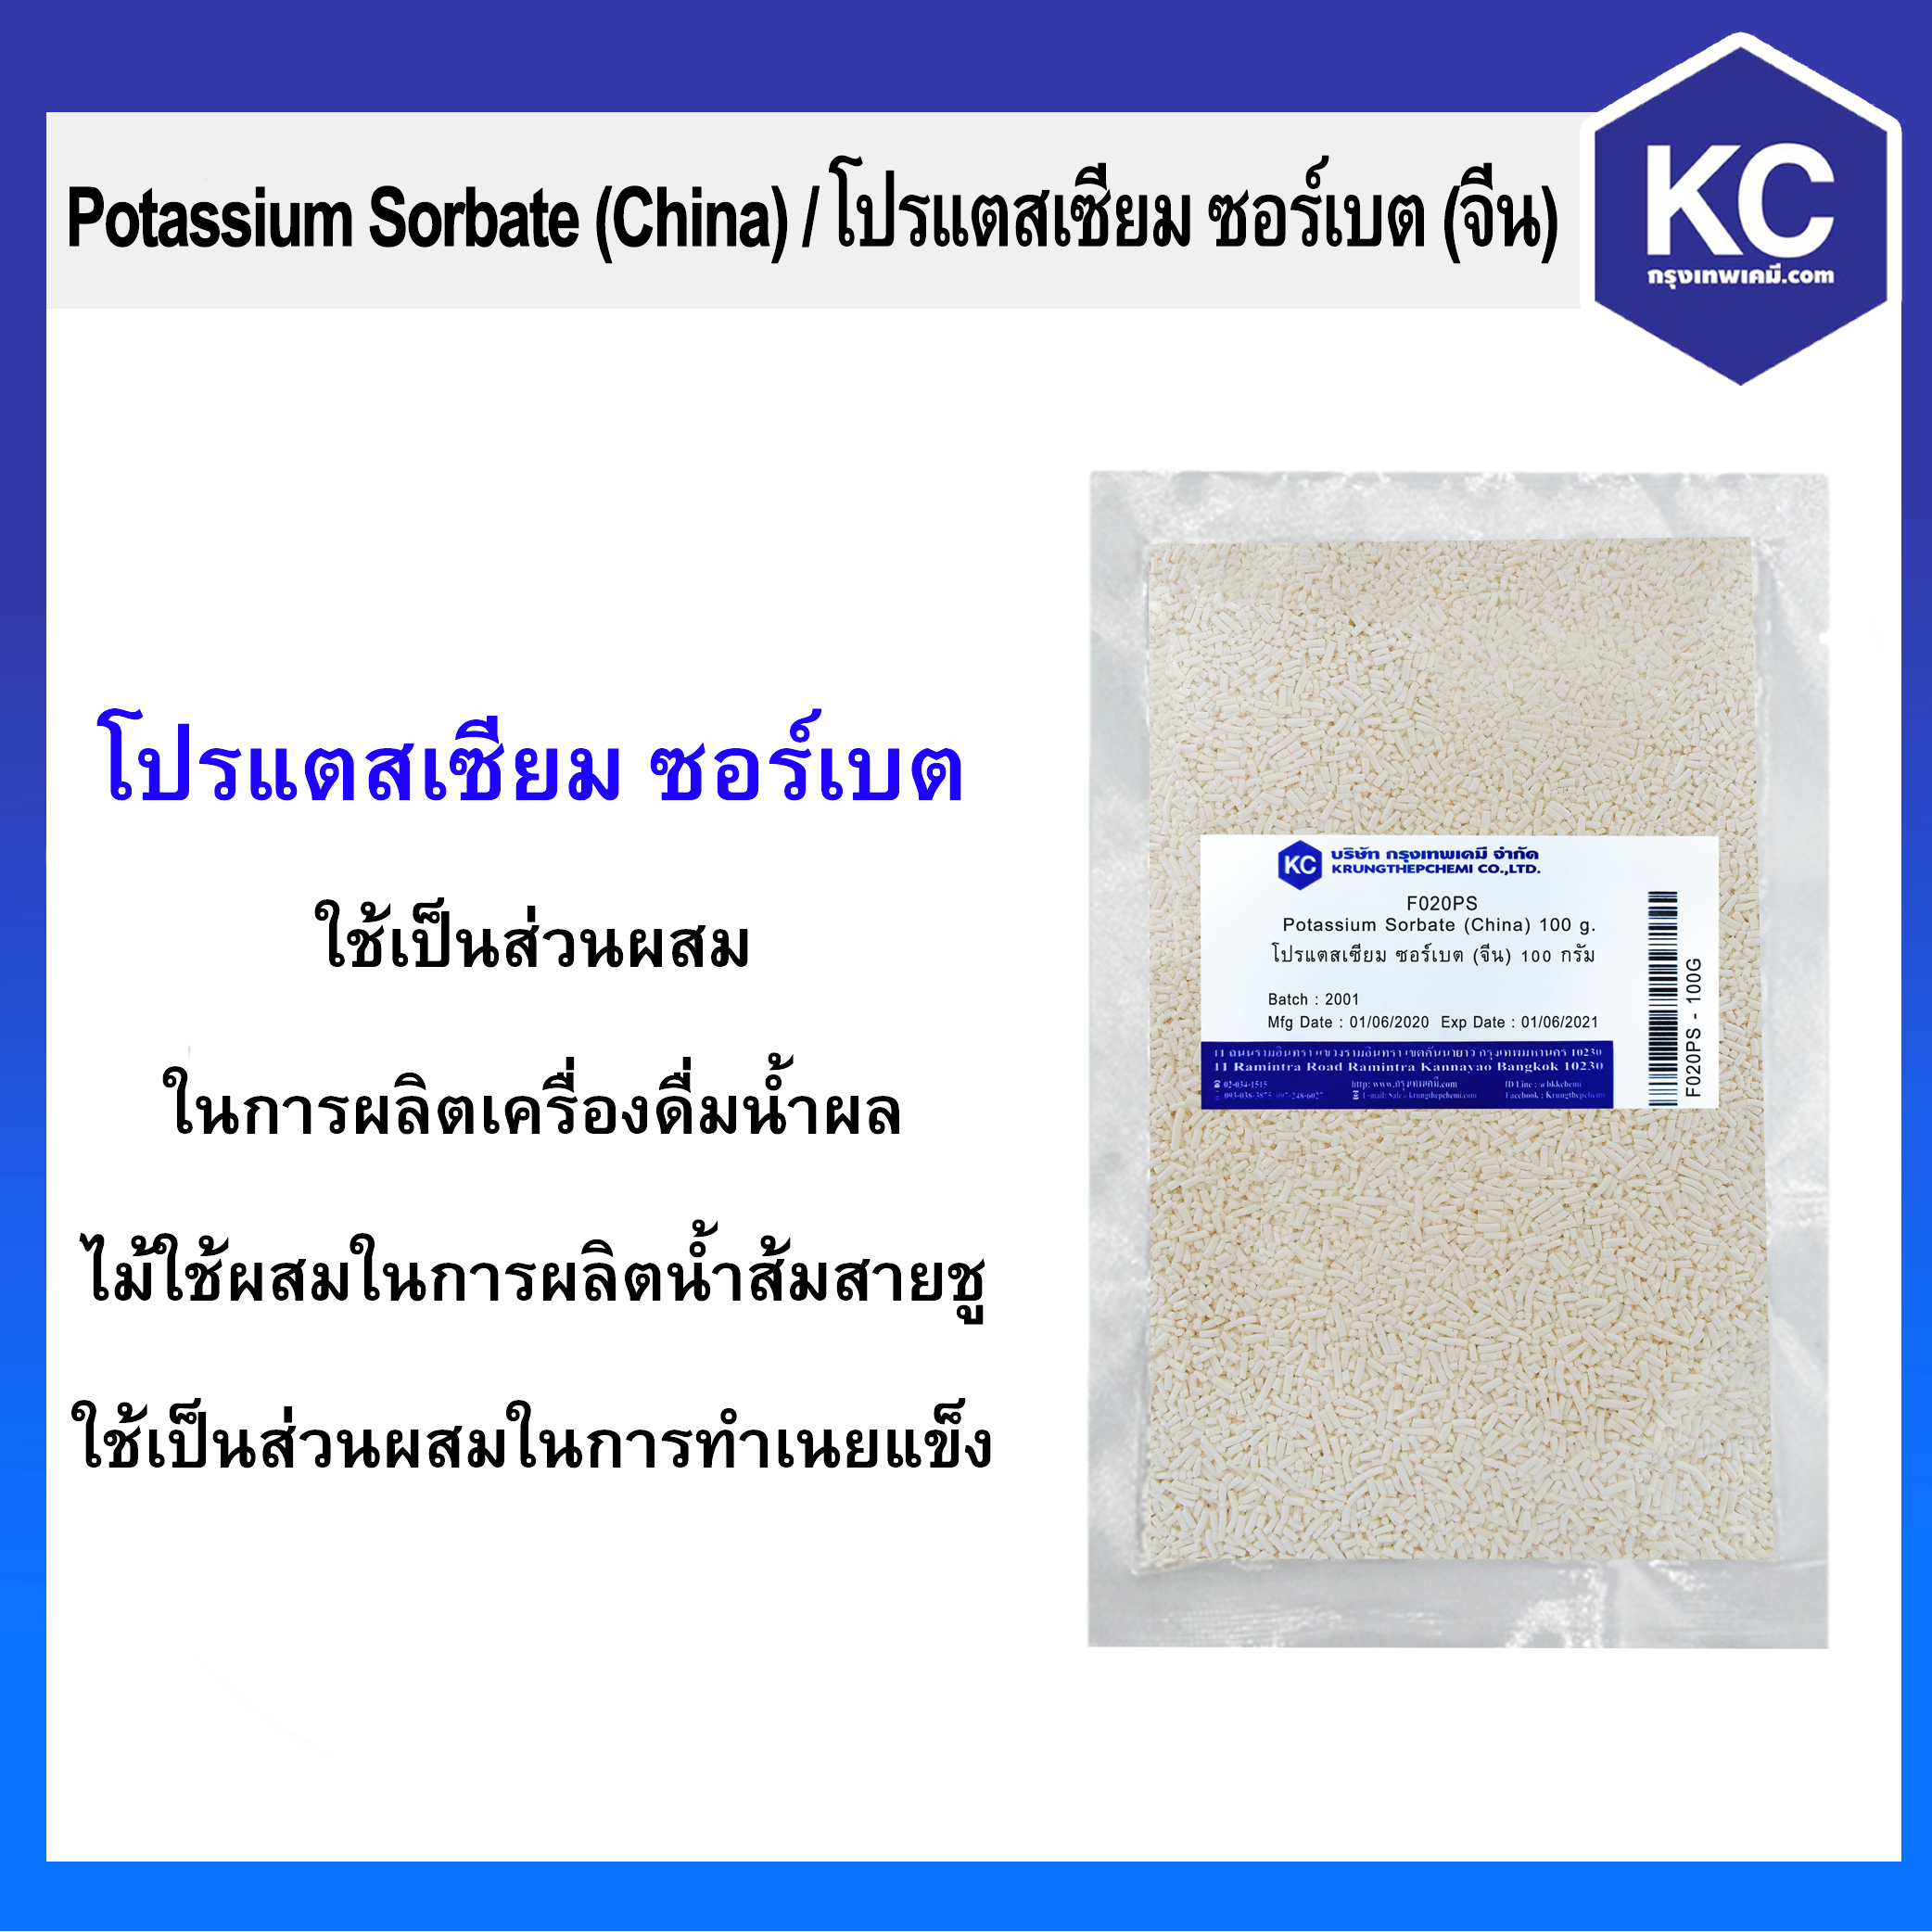 โปรแตสเซียม ซอร์เบต / Potassium Sorbate ขนาด 100 g.